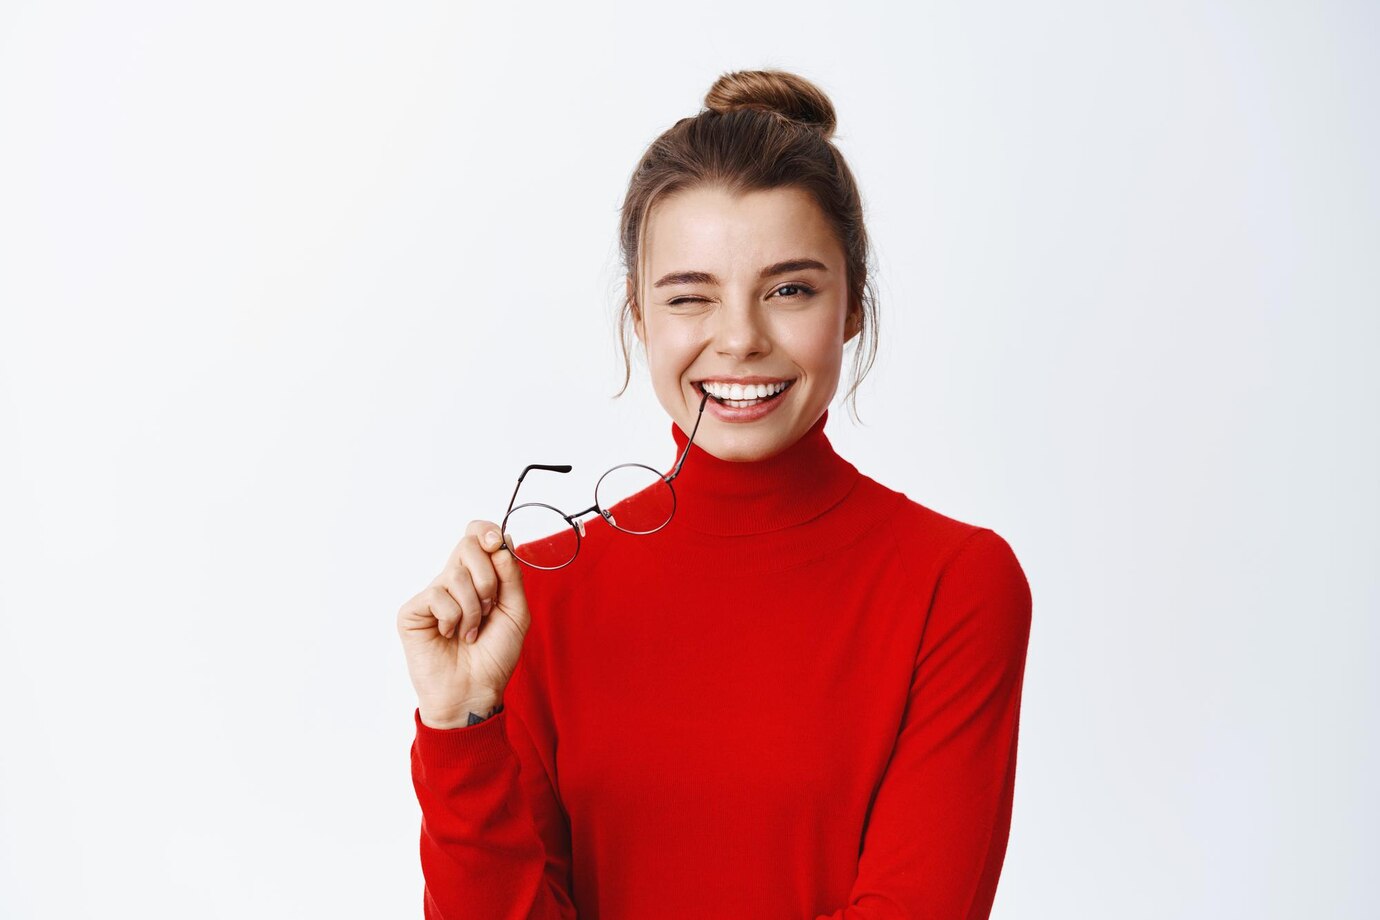 Kacamata untuk Wajah Lebar, Berikut Ini 9 Tips Memilihnya!